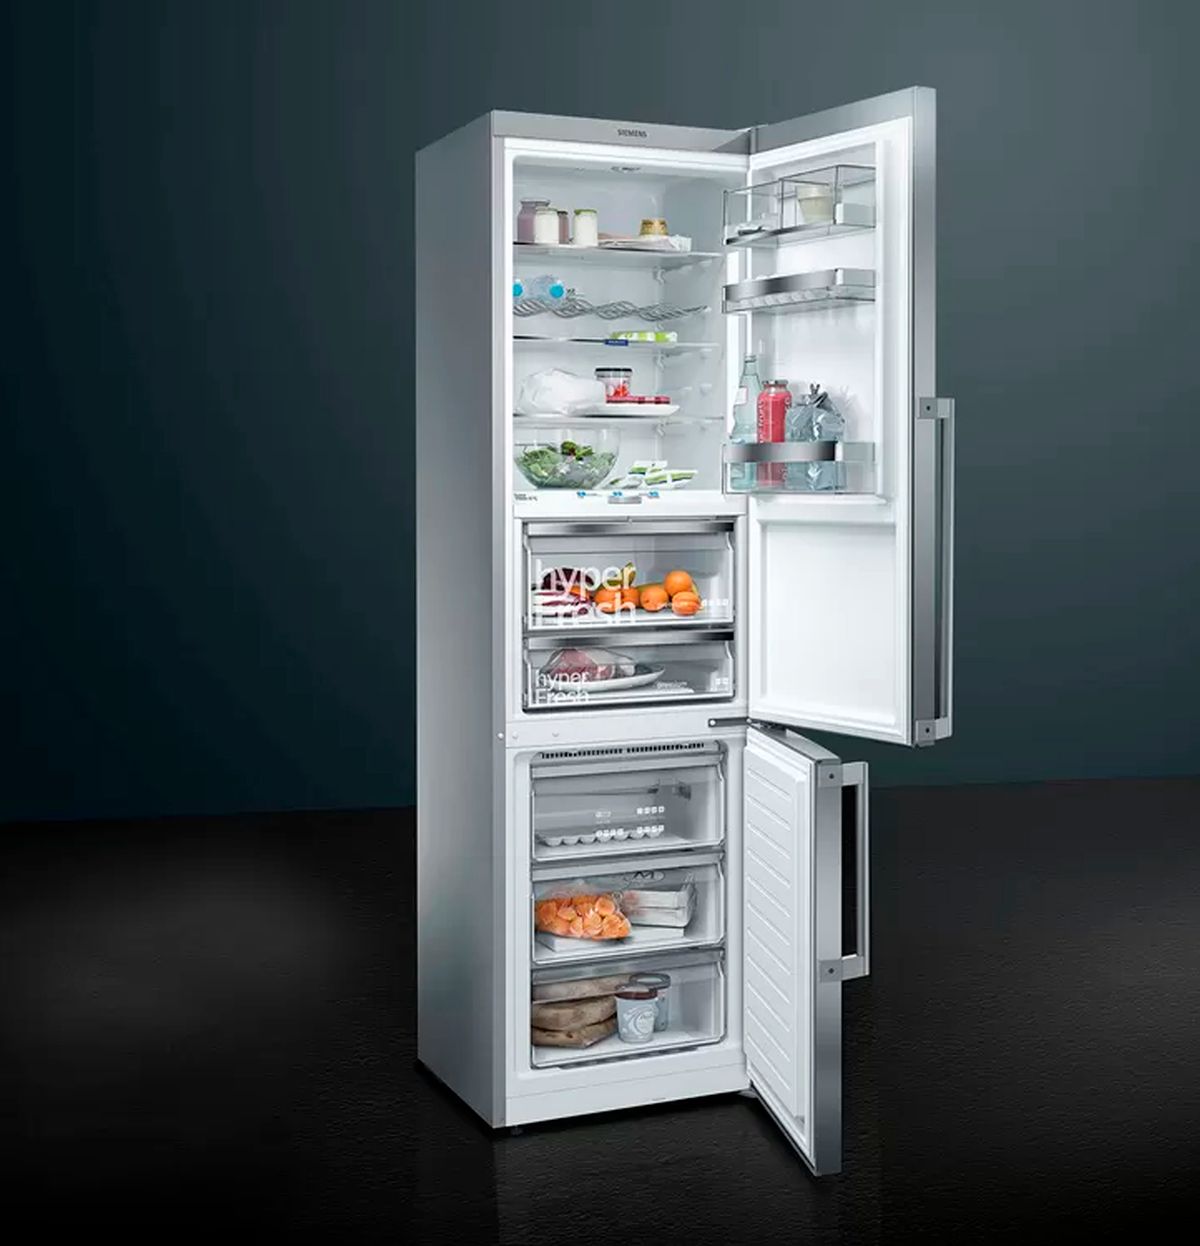 Quanto tempo deve stare acceso il frigorifero in estate?